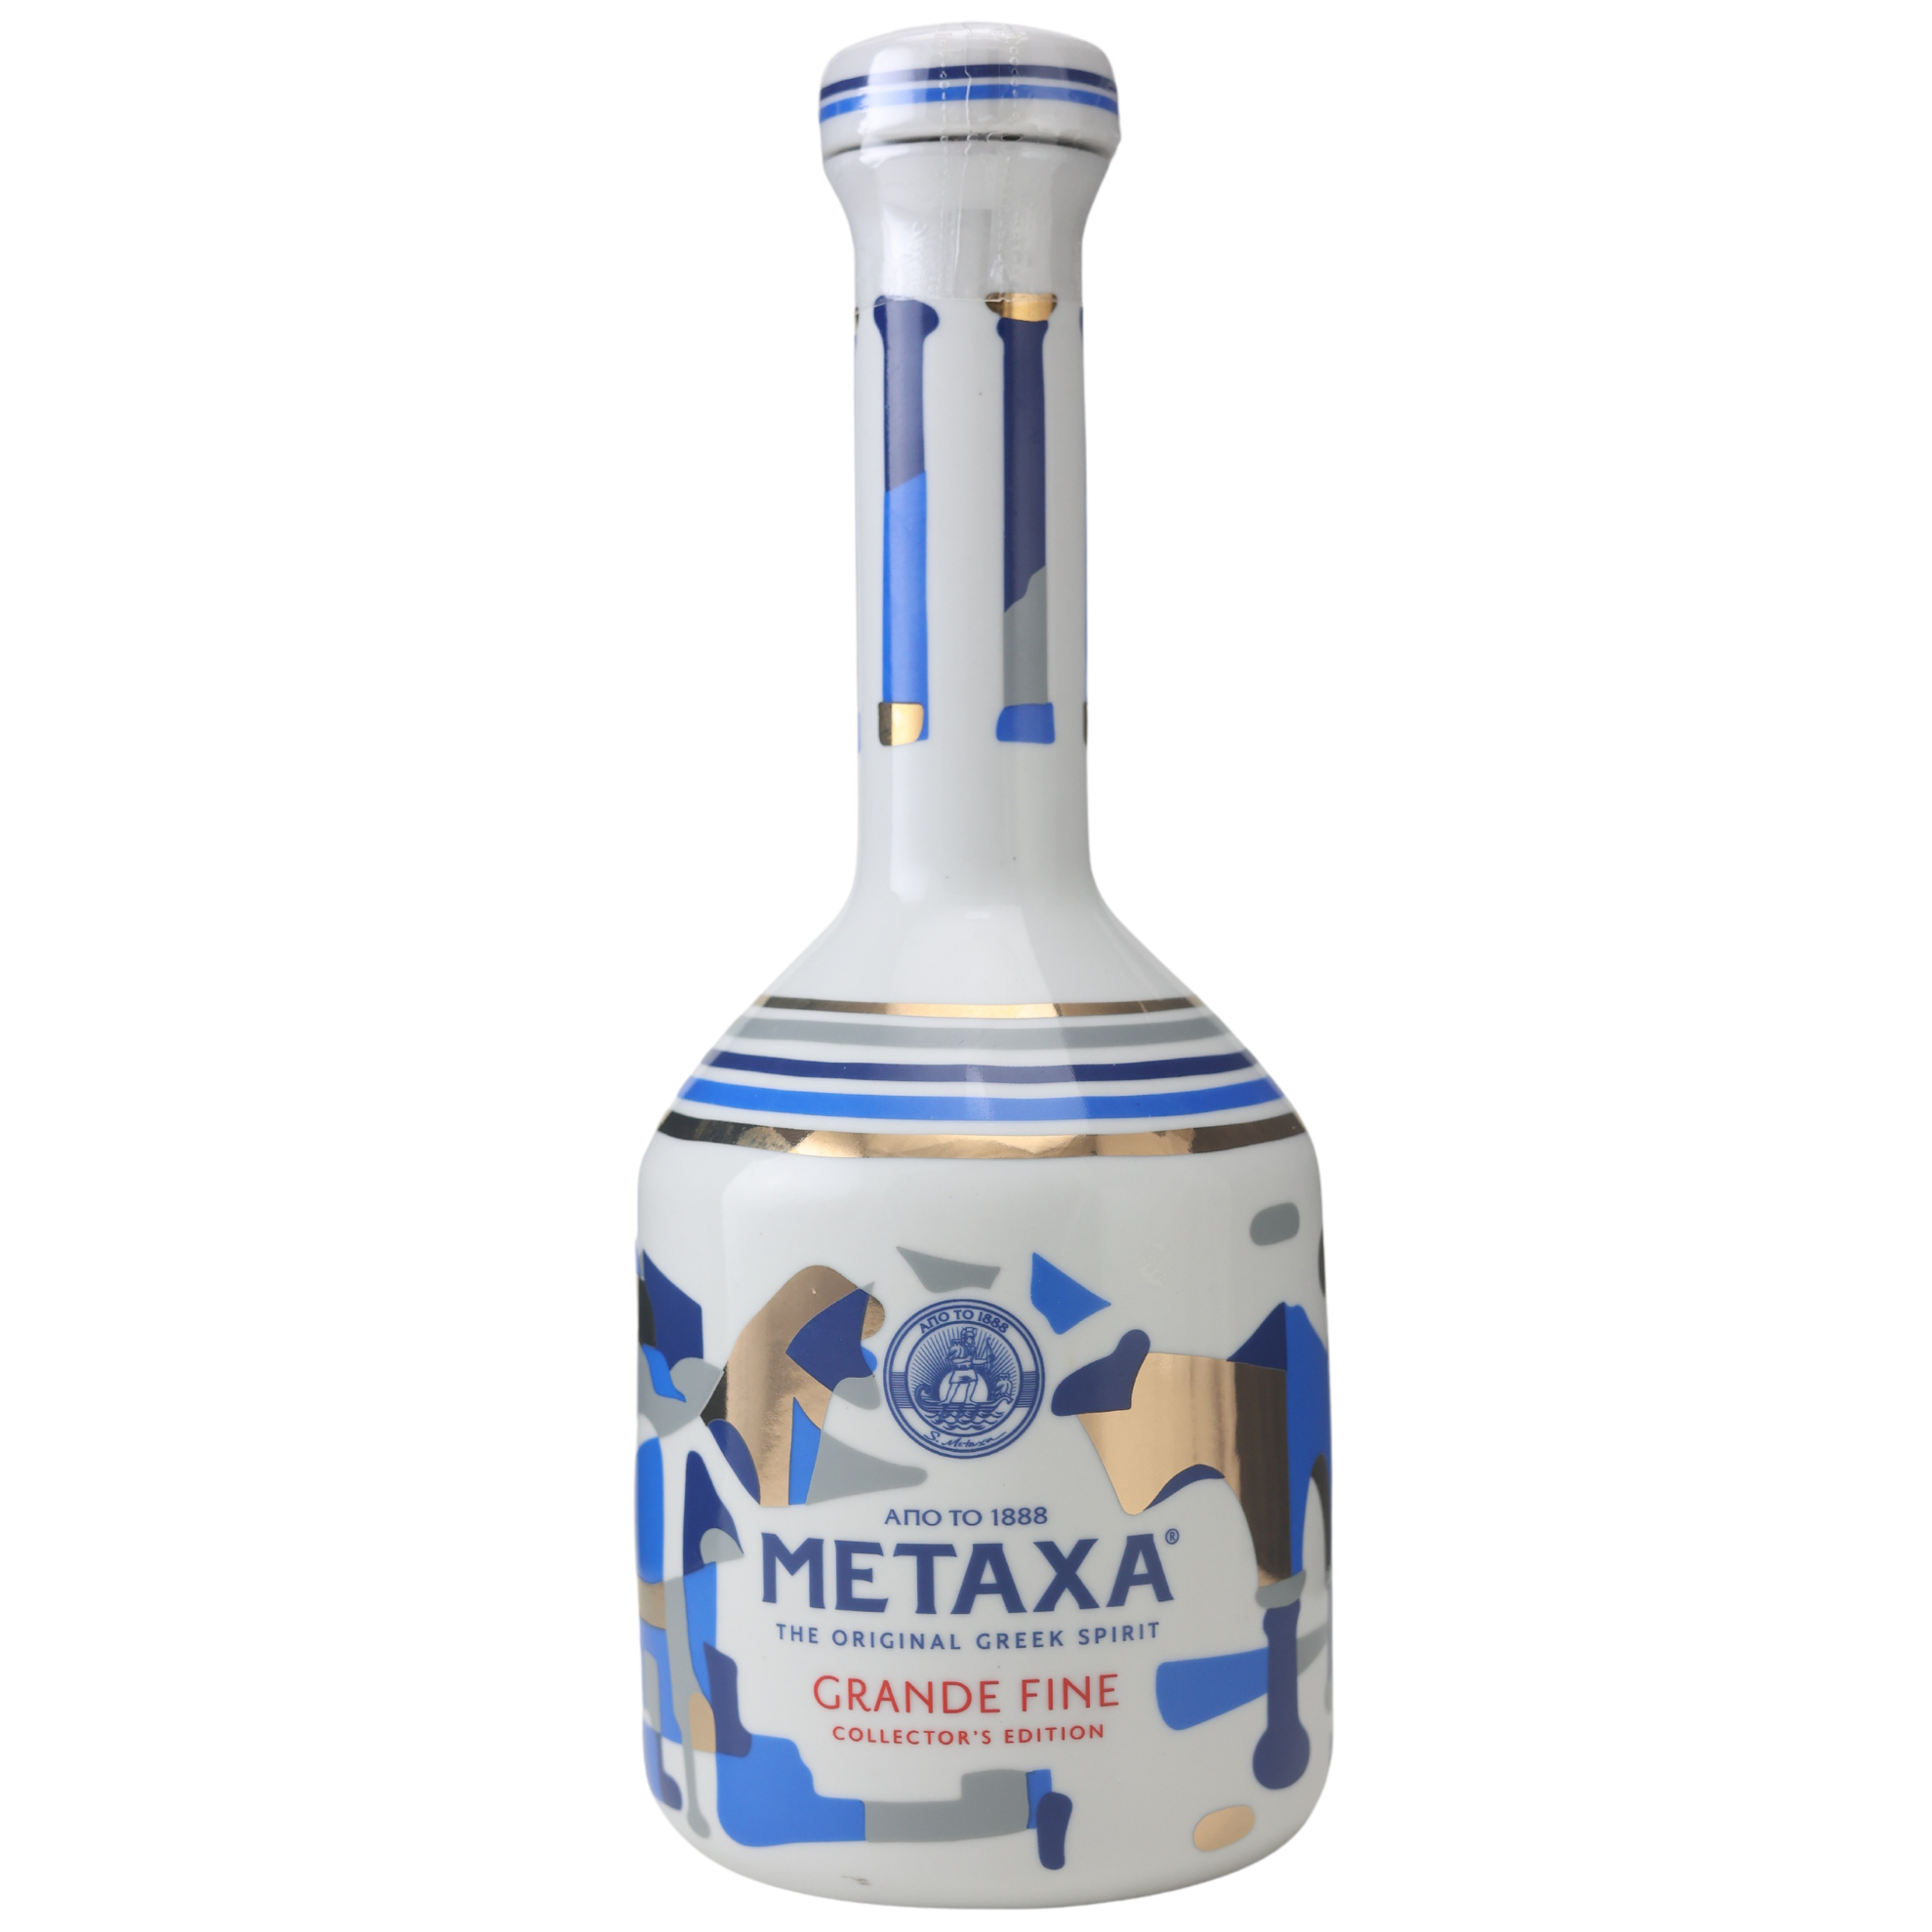 Metaxa Grande Fine in Keramikflasche 40% 0,7l